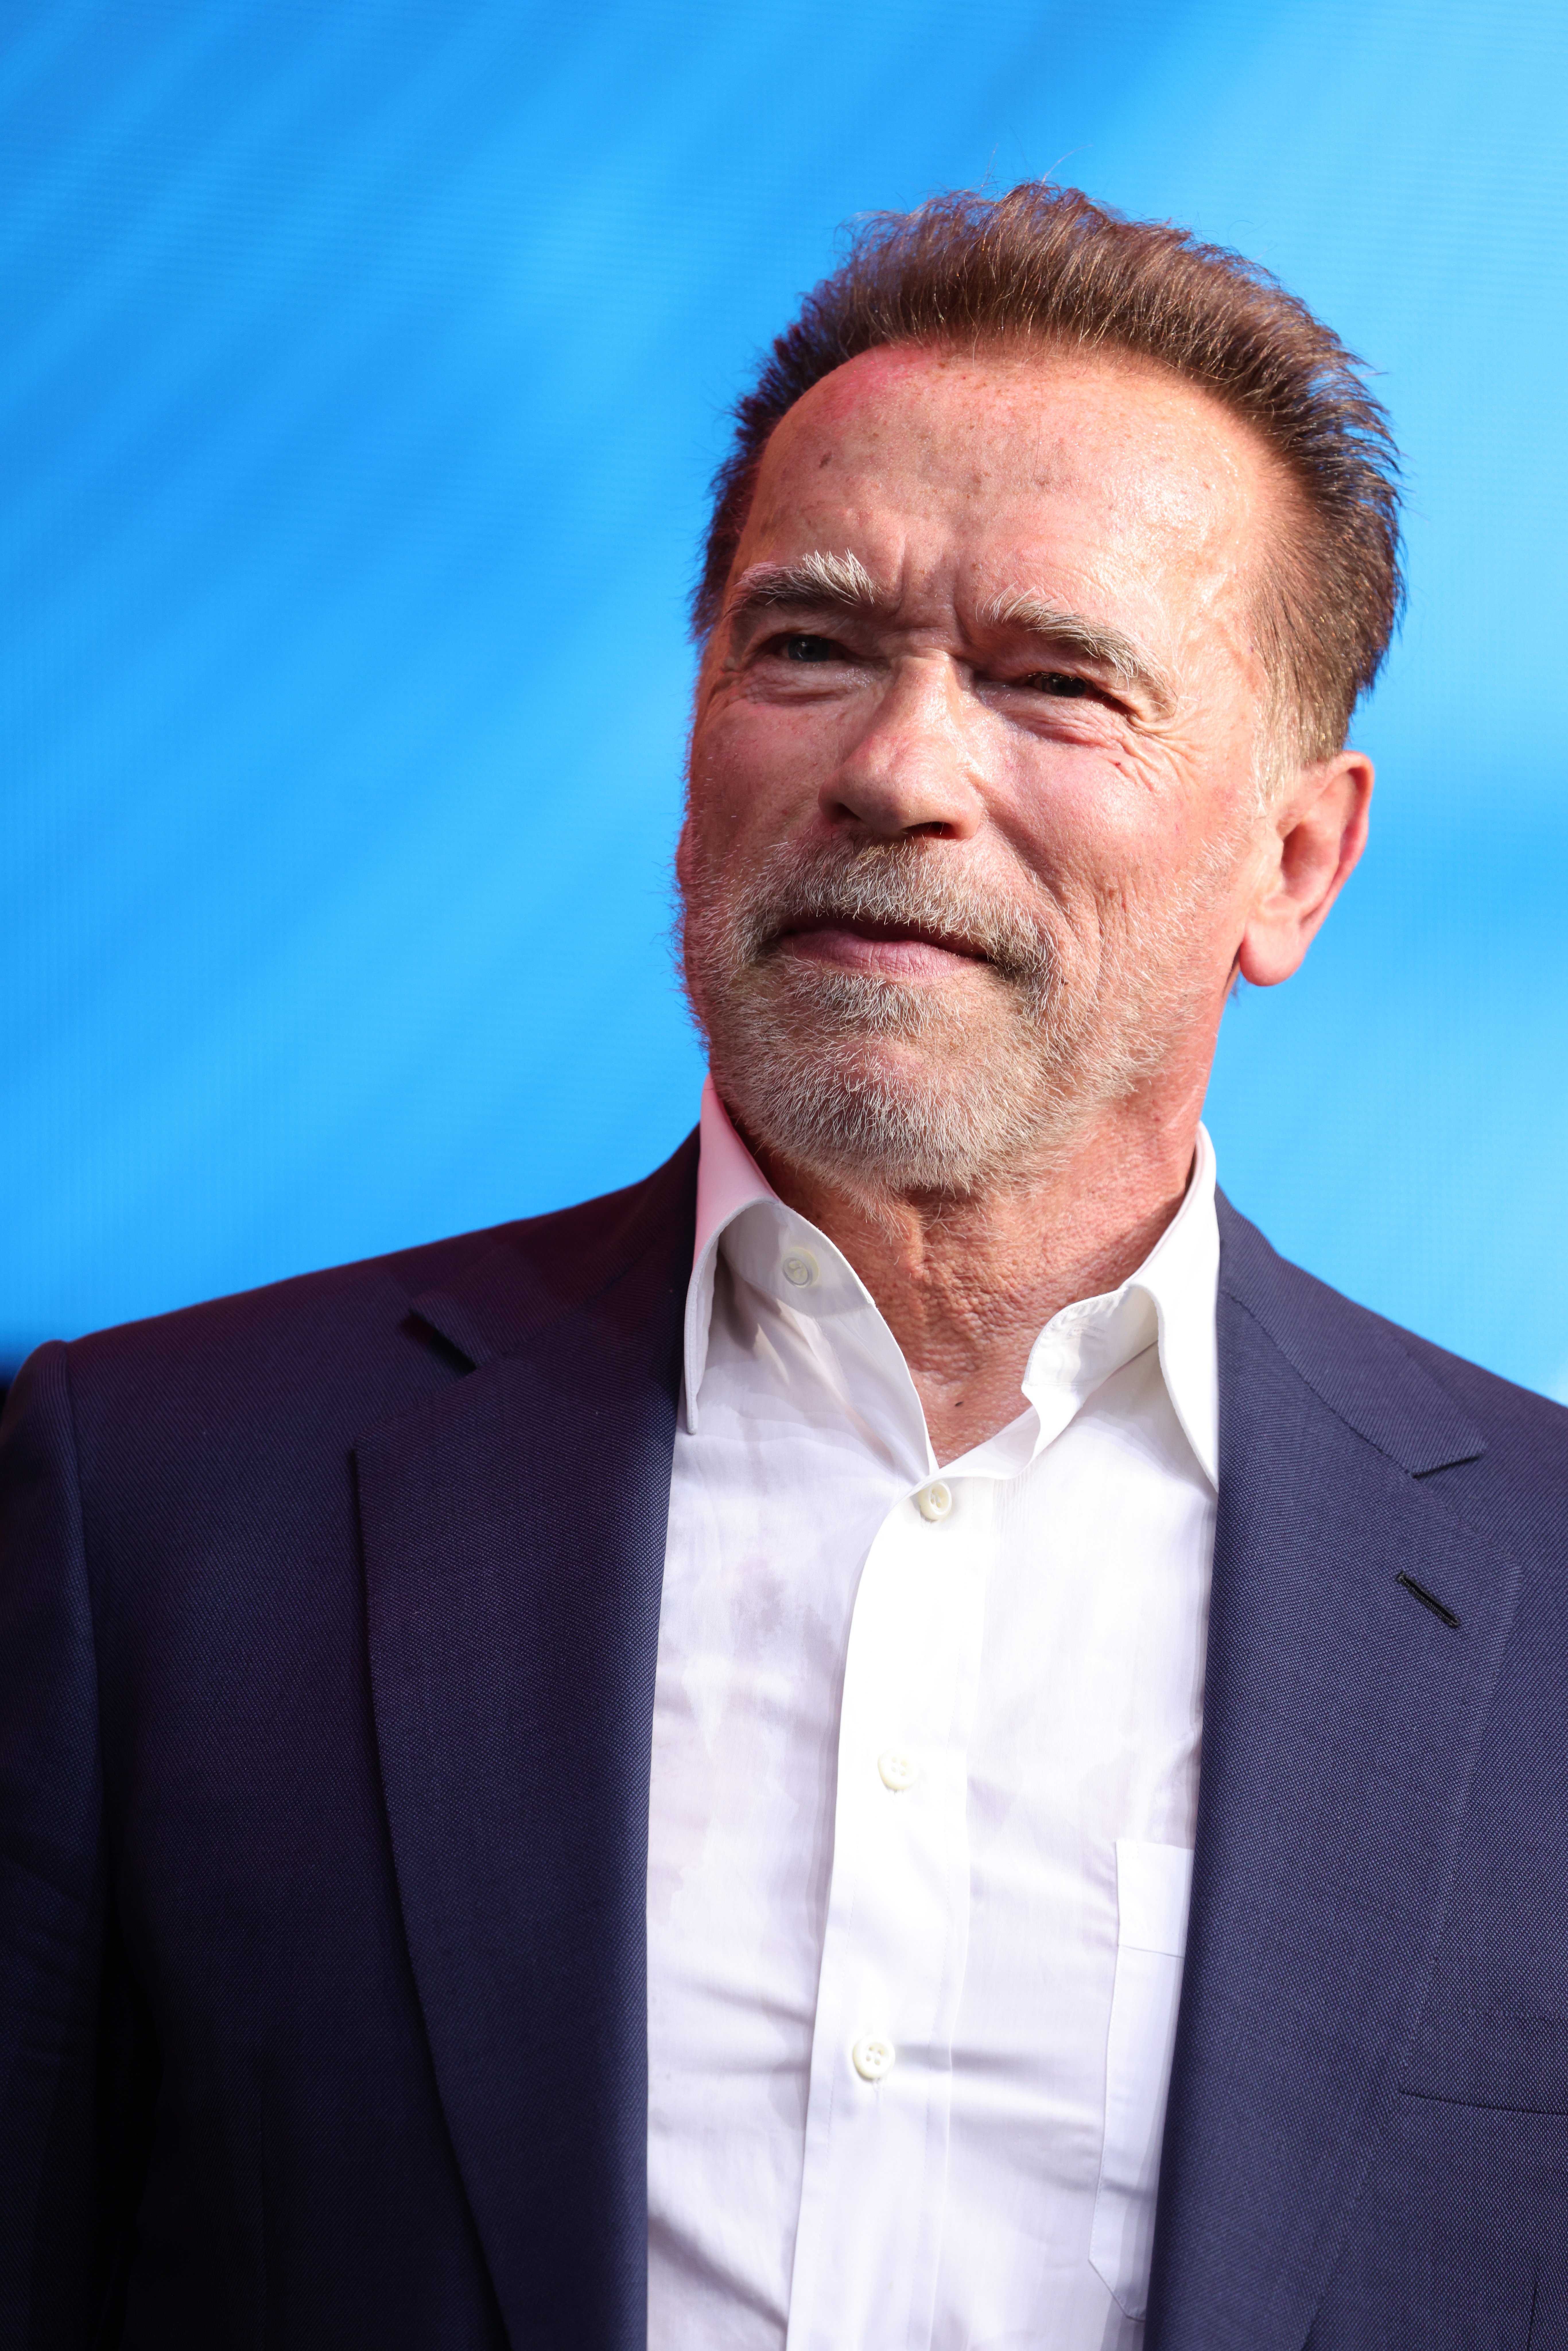 Arnold Schwarzenegger durante el evento Digital X, el 7 de septiembre de 2021 en Colonia, Alemania. | Foto: Getty Images